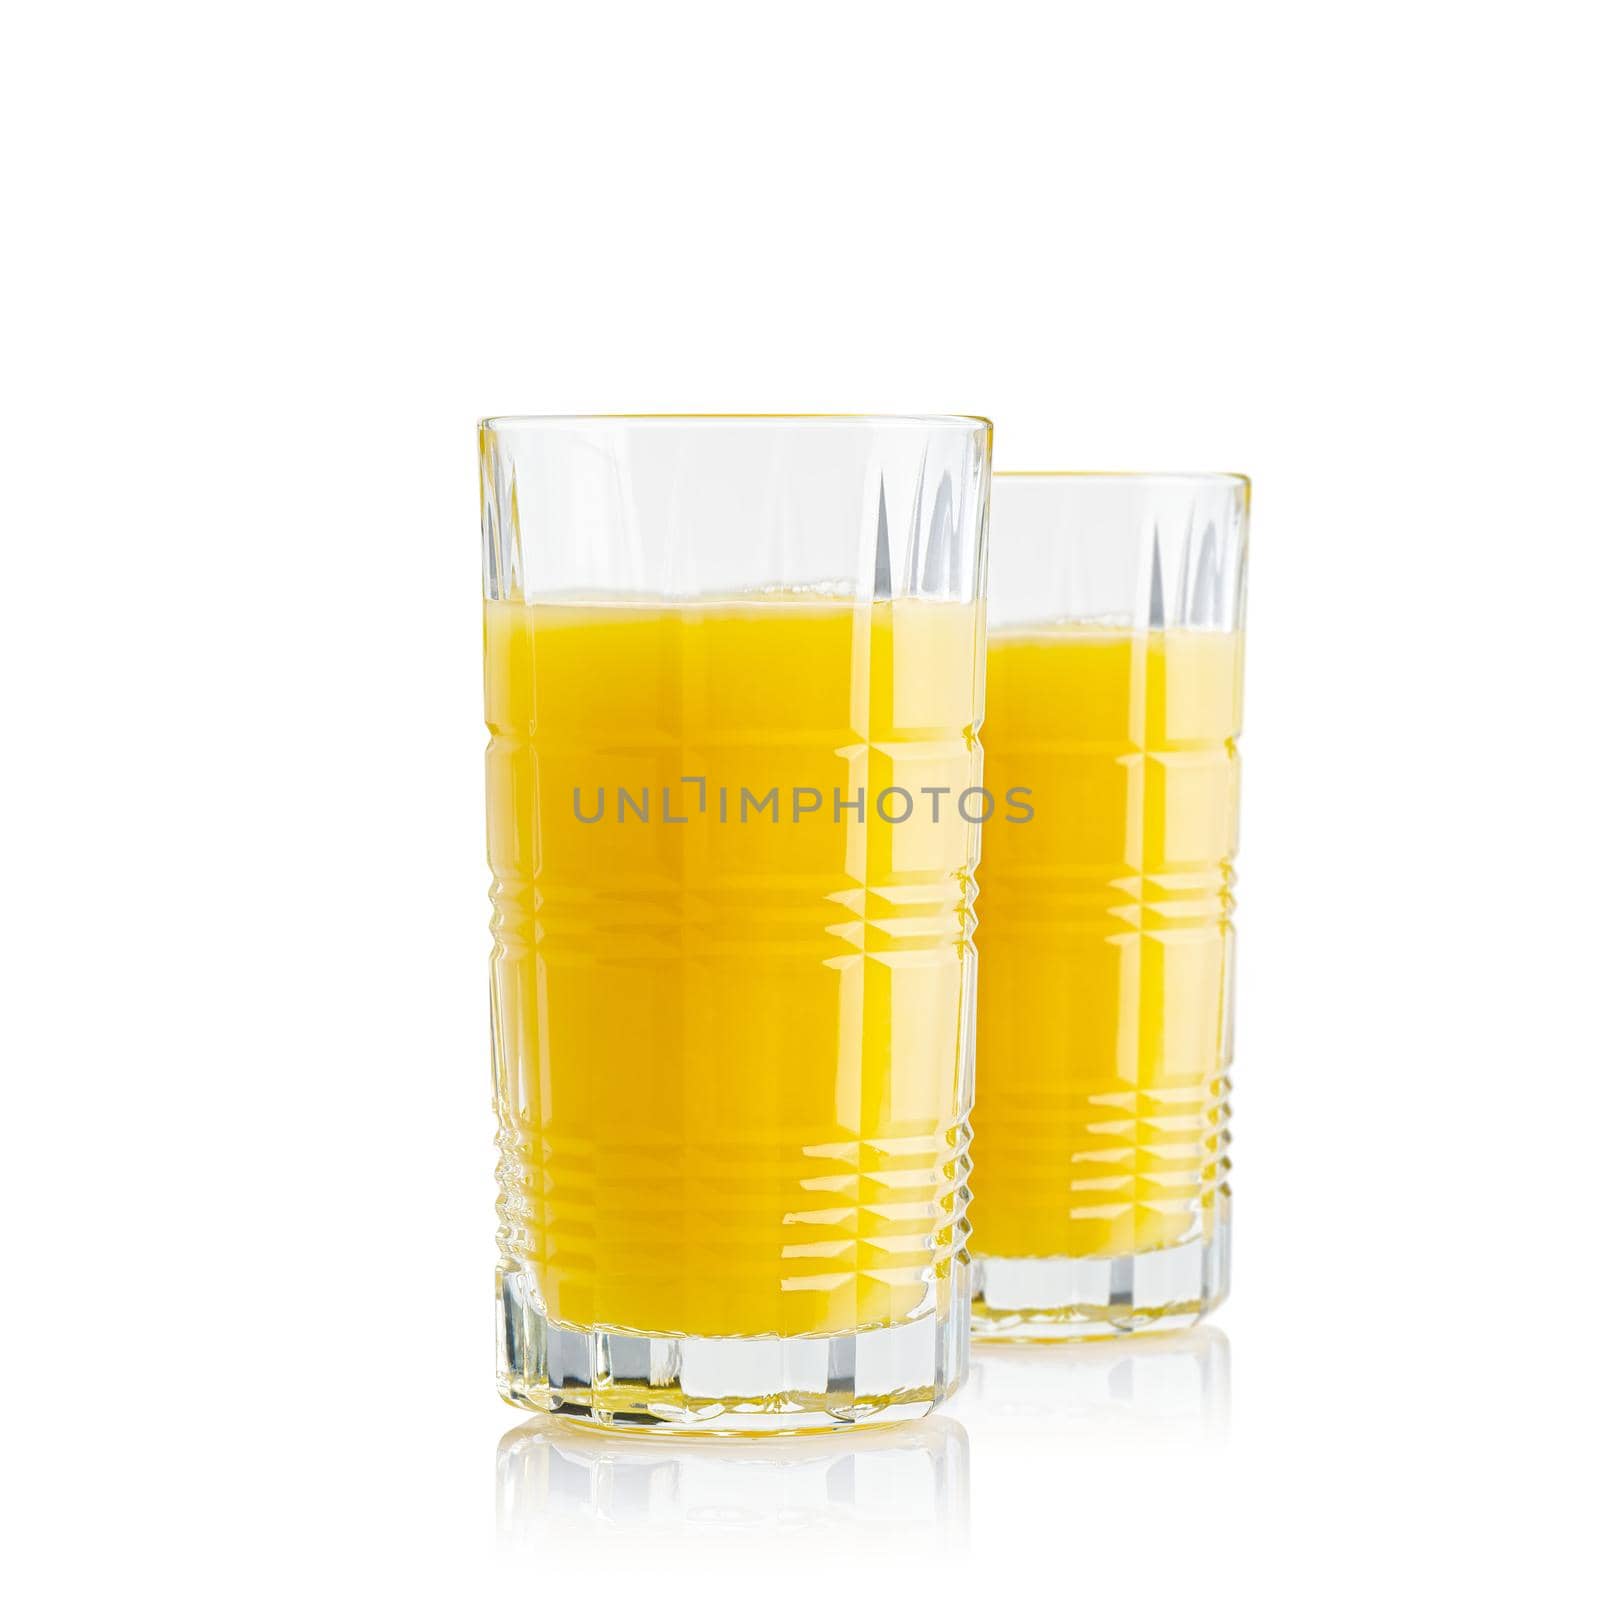 Orange juice glass, isolated on white. Glass of fresh orange juice on white background by PhotoTime